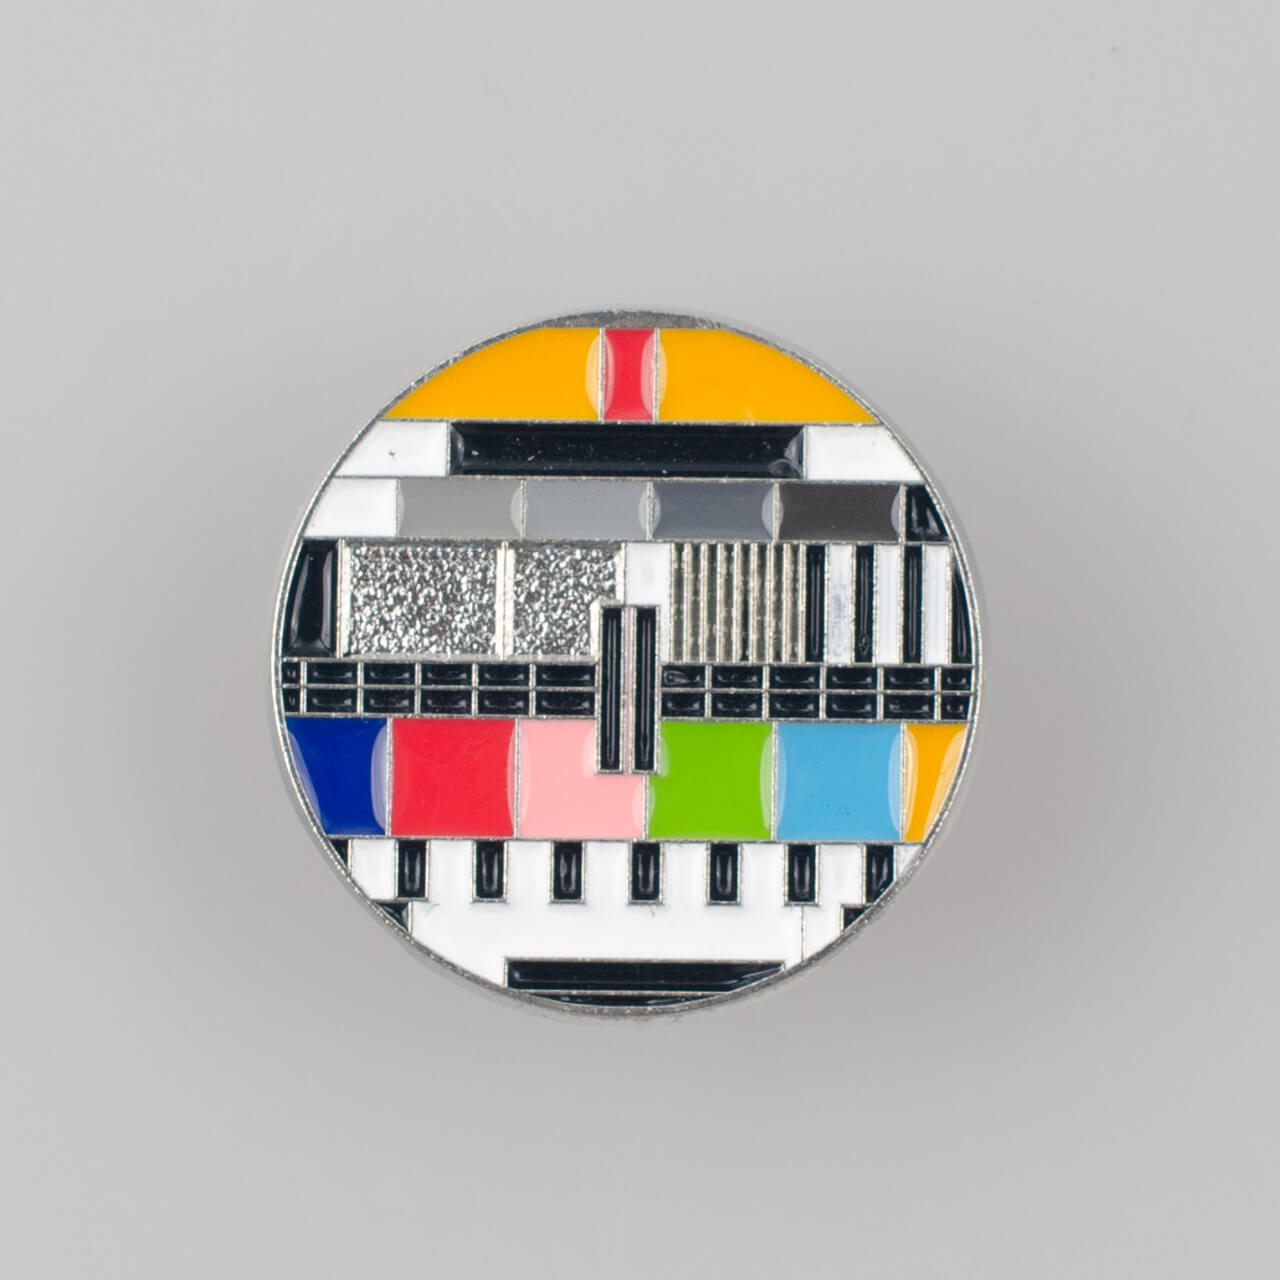 Plansza testowa TV znaczek pin, metal kolor srebrny/ kolorowa emalia, śr. 29 mm